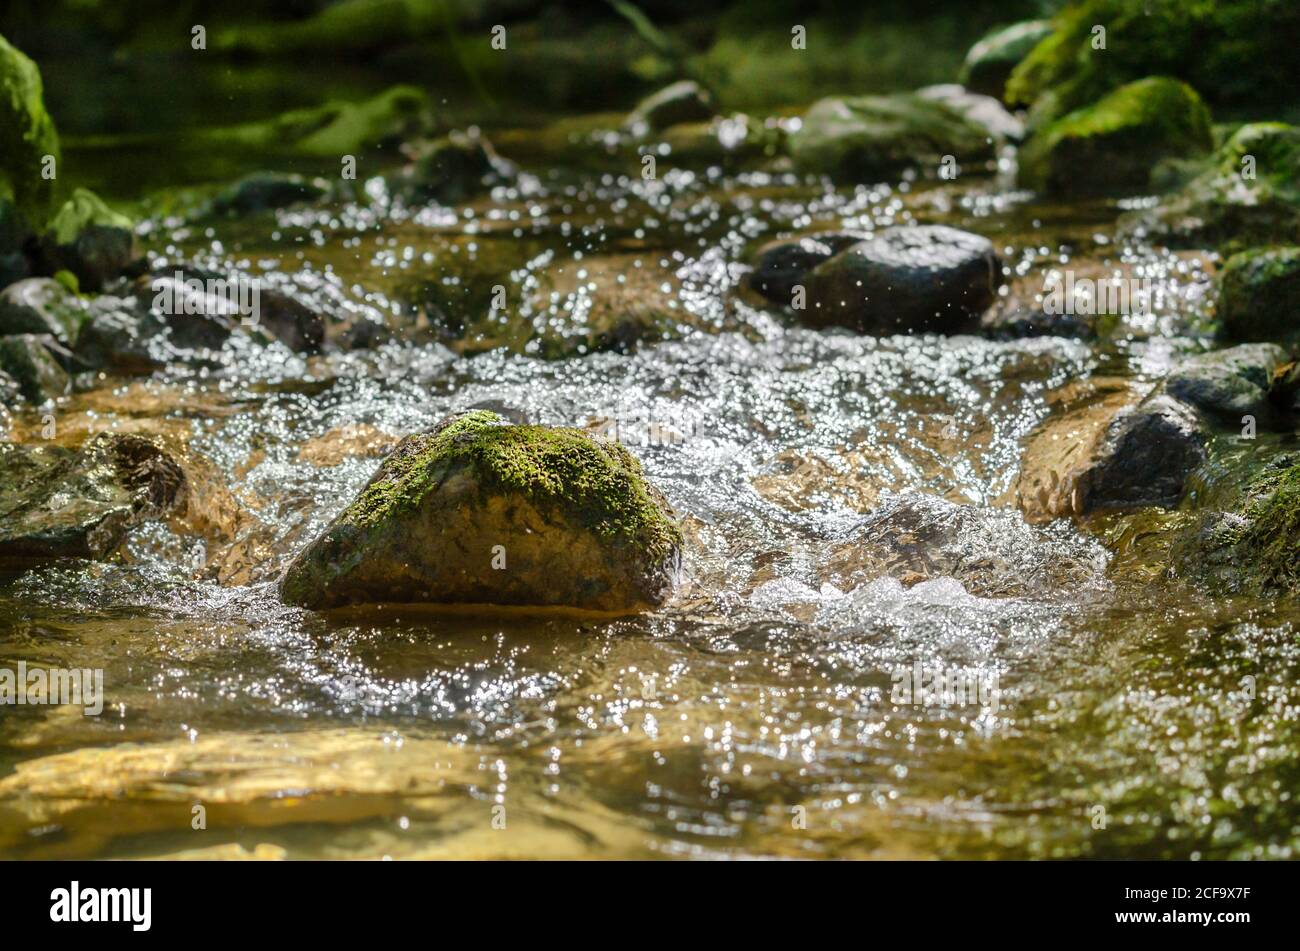 Pierre moussy dans un ruisseau de montagne qui se précipite. Une pierre dans un lit de ruisseau, un jour ensoleillé d'automne, surcultivé avec de la mousse, entouré d'eau bouillonnante. Banque D'Images